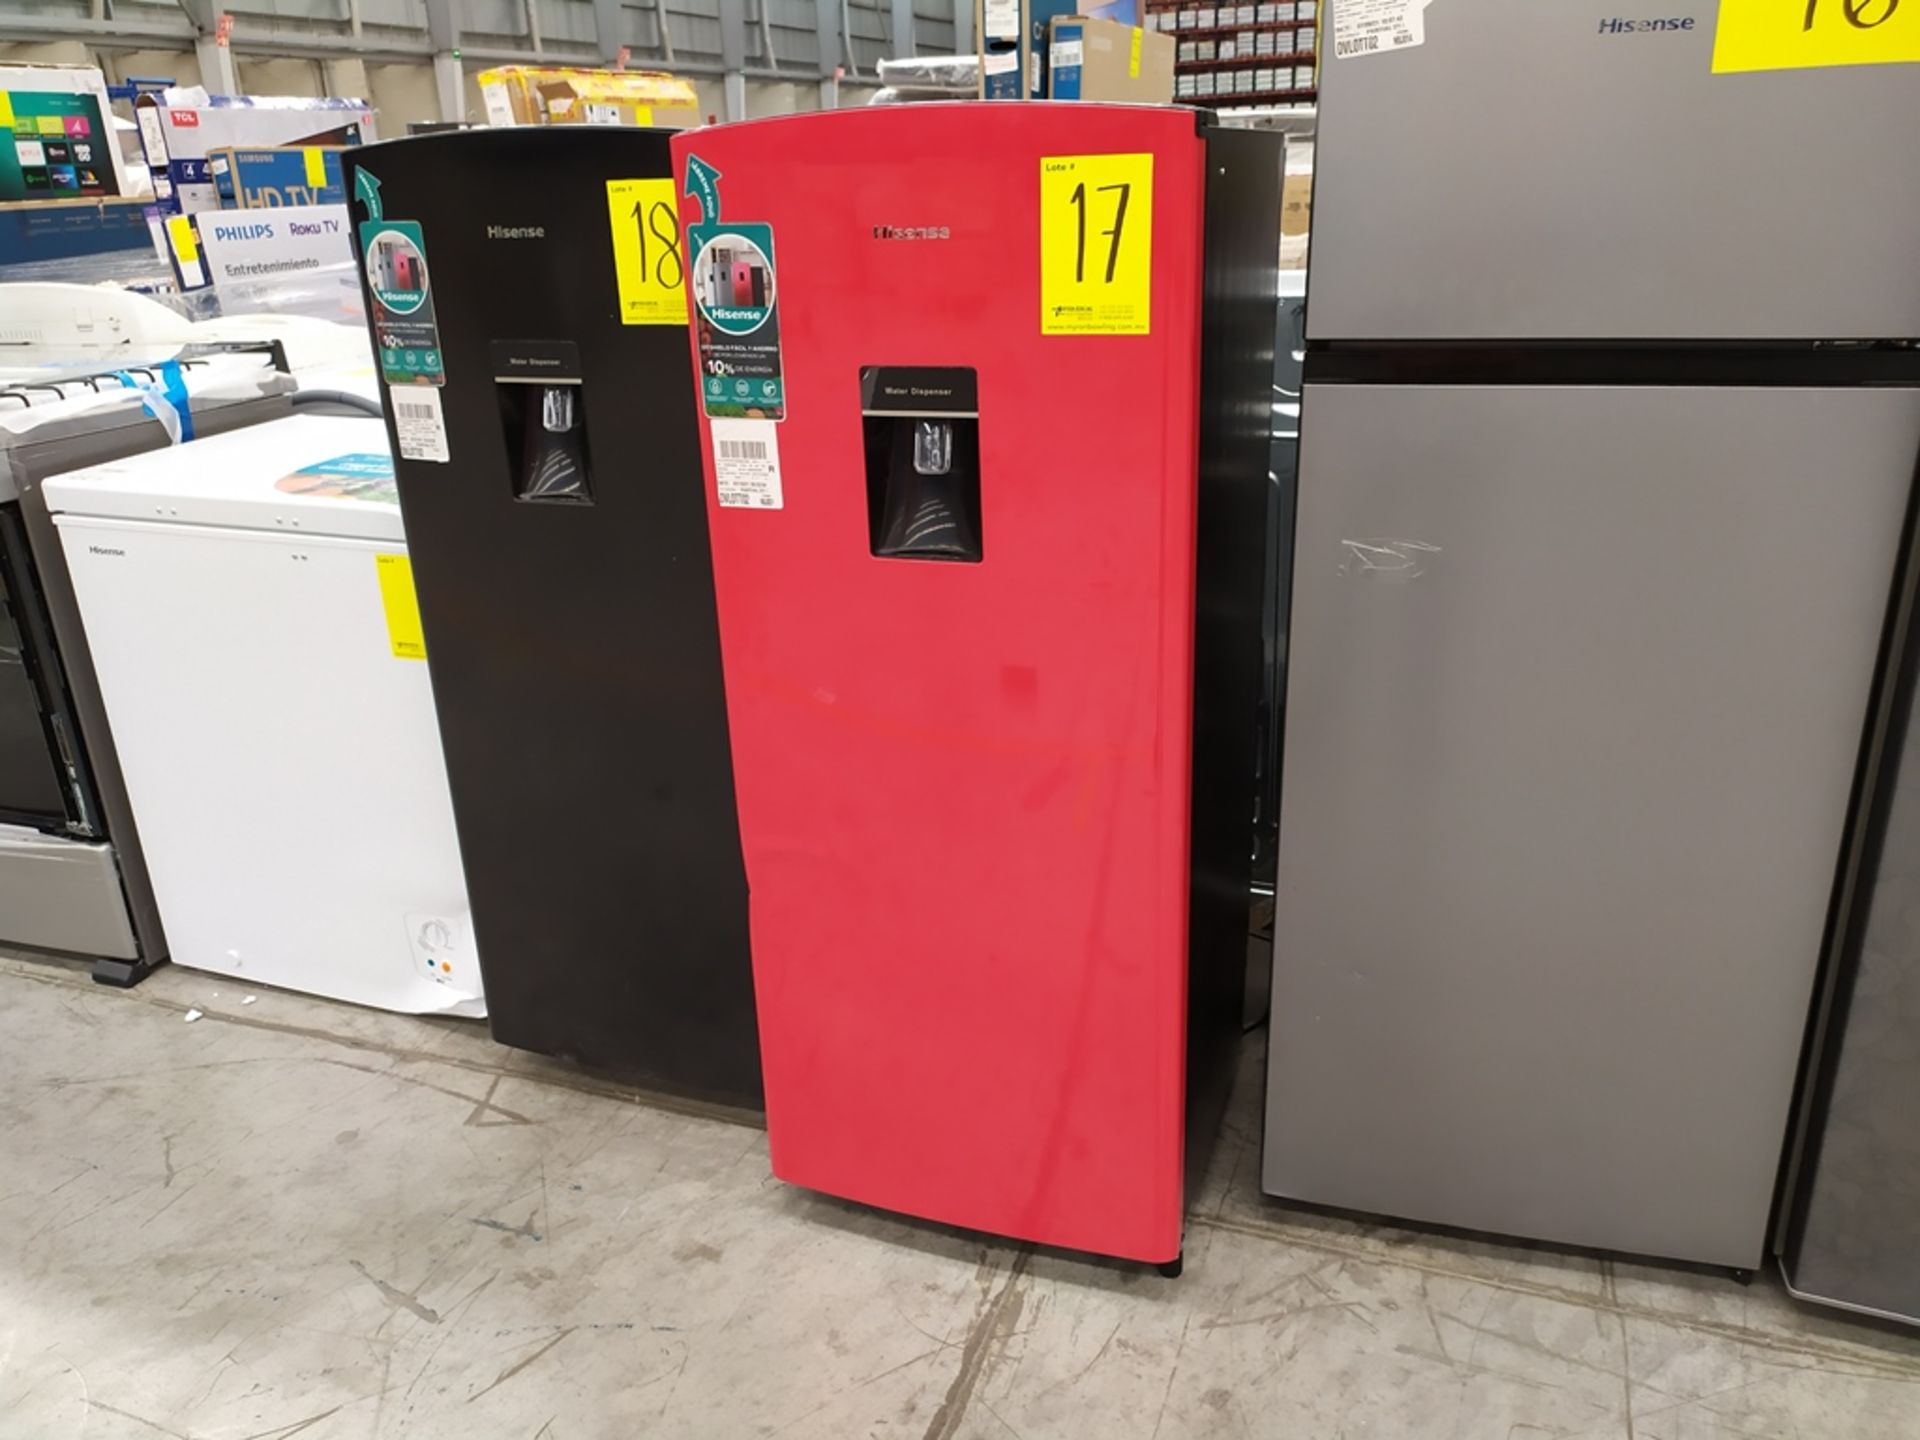 Refrigerador Convencional marca Hisense, Modelo RR63D6WRX, Serie 1B0176Z0200JBC147E20005, Color Roj - Image 2 of 8